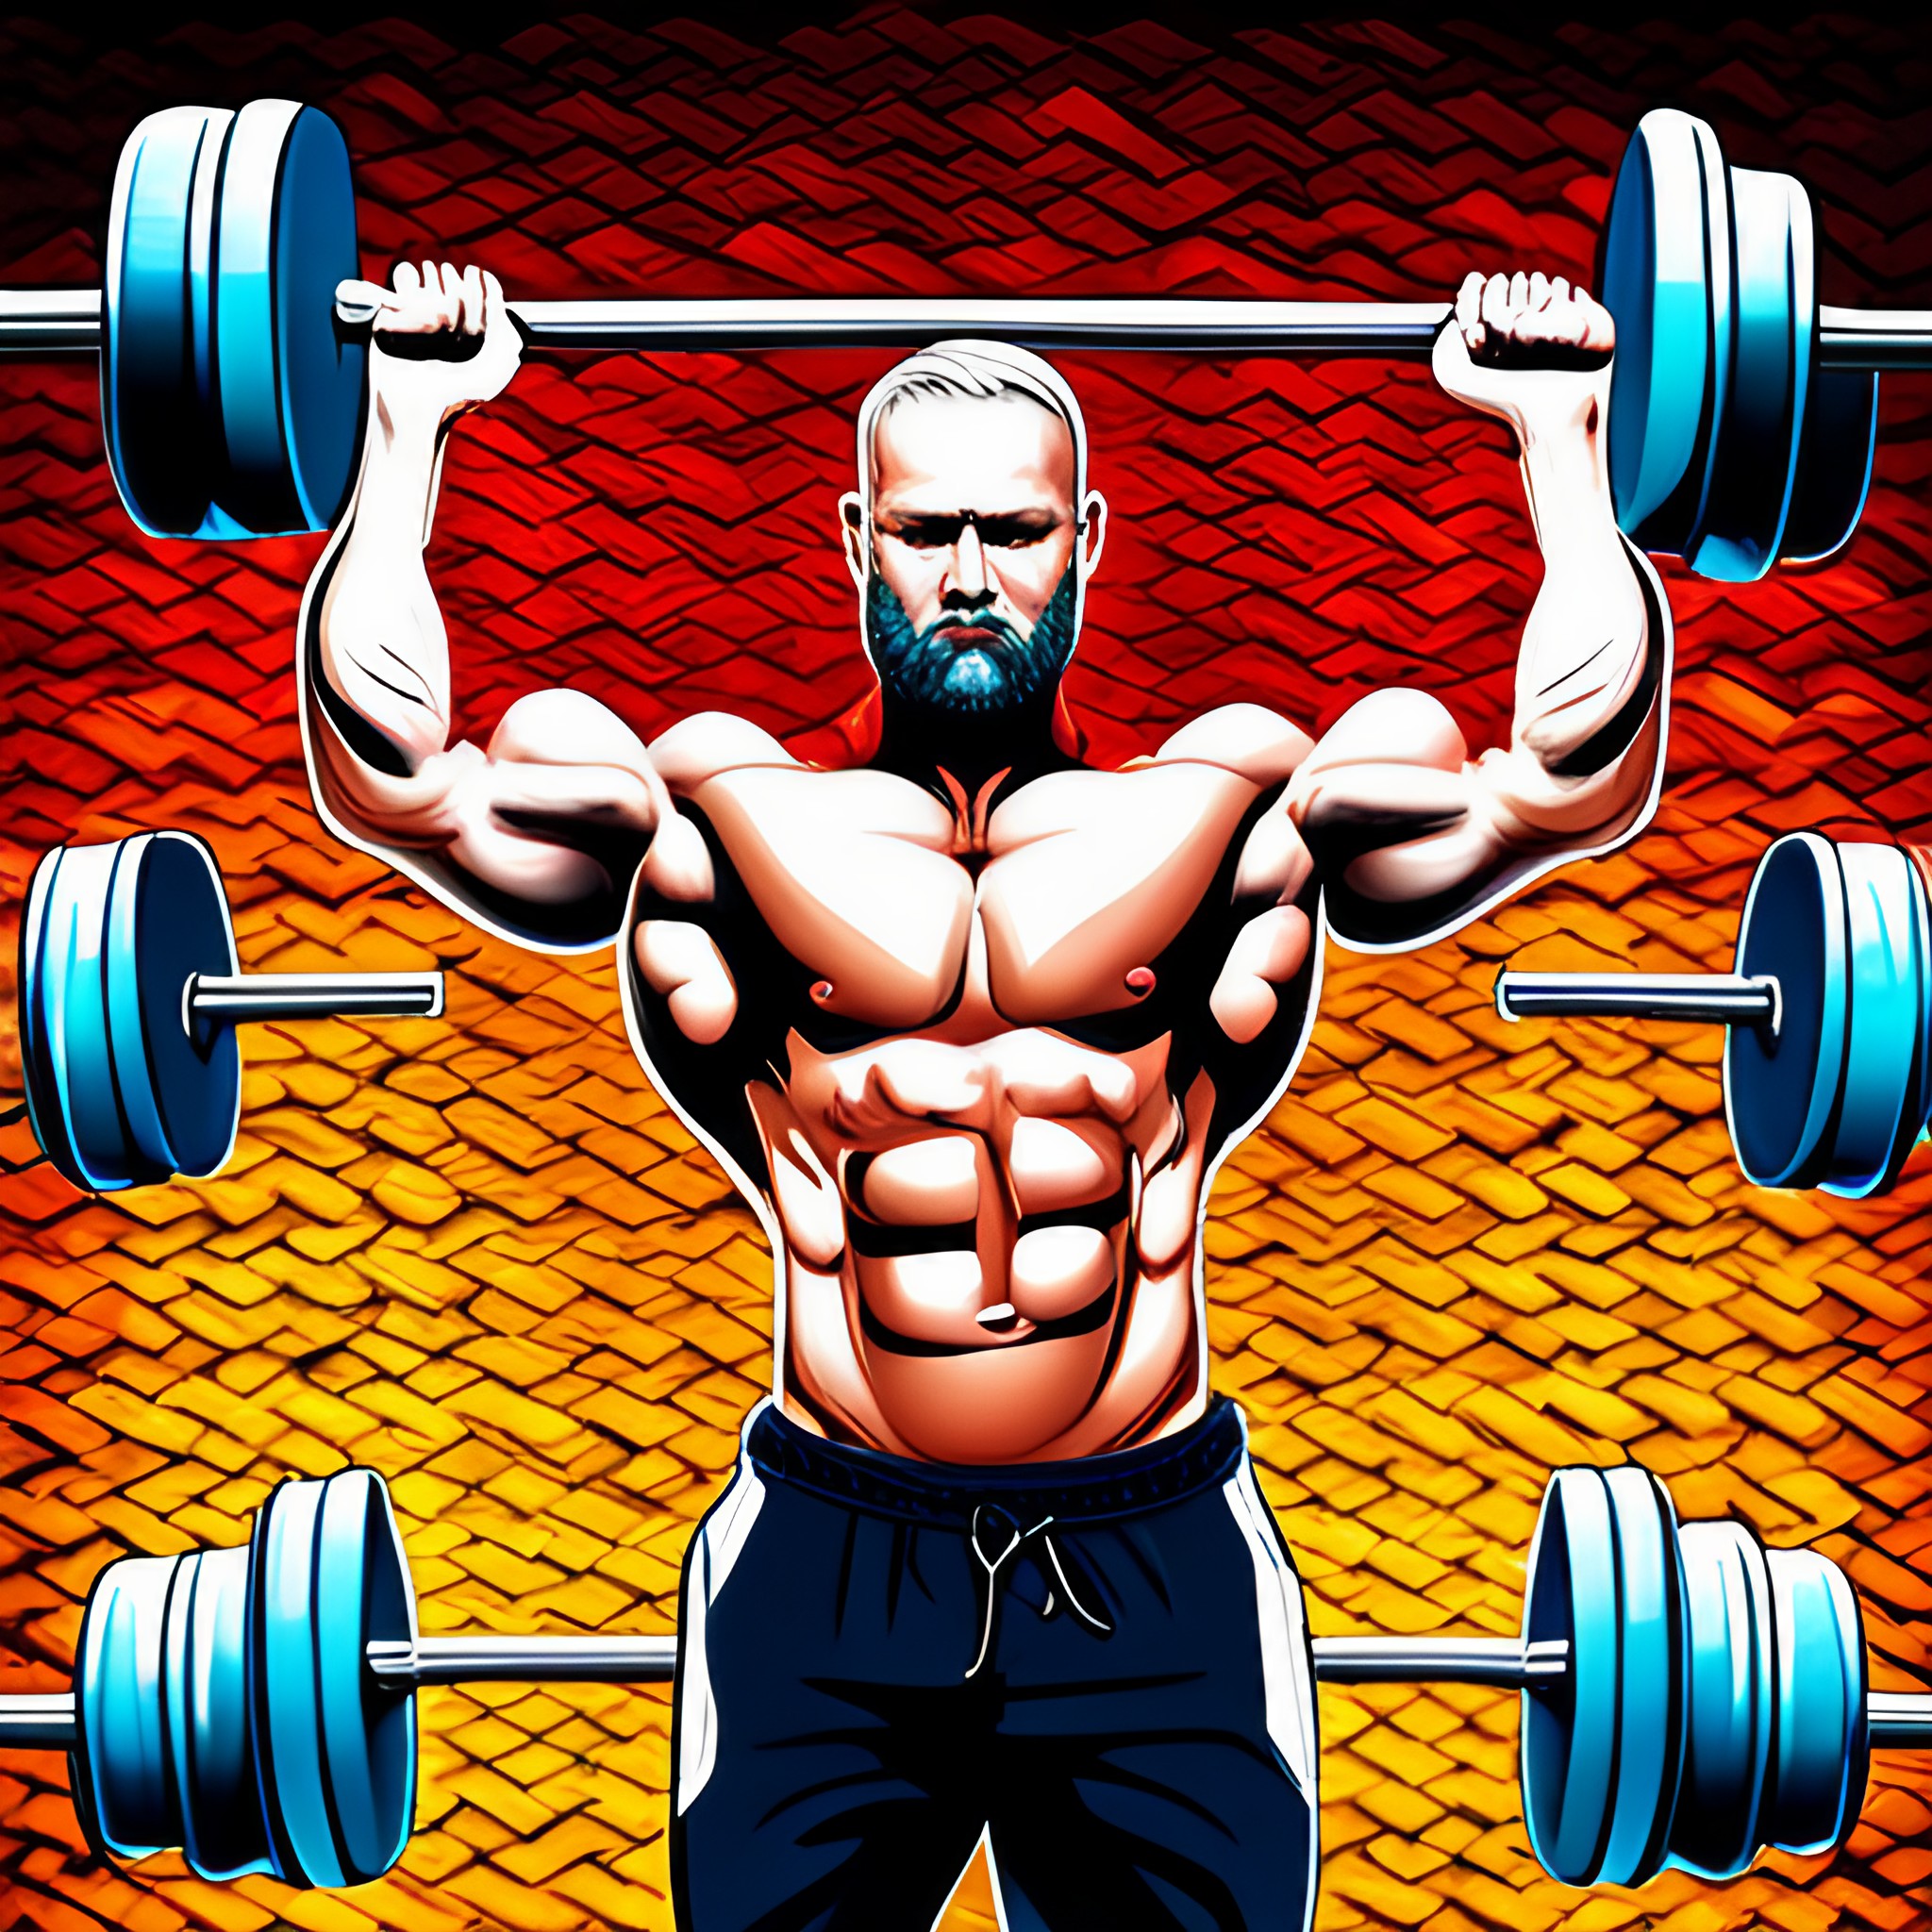 A muscular weight lifter lifting weights.